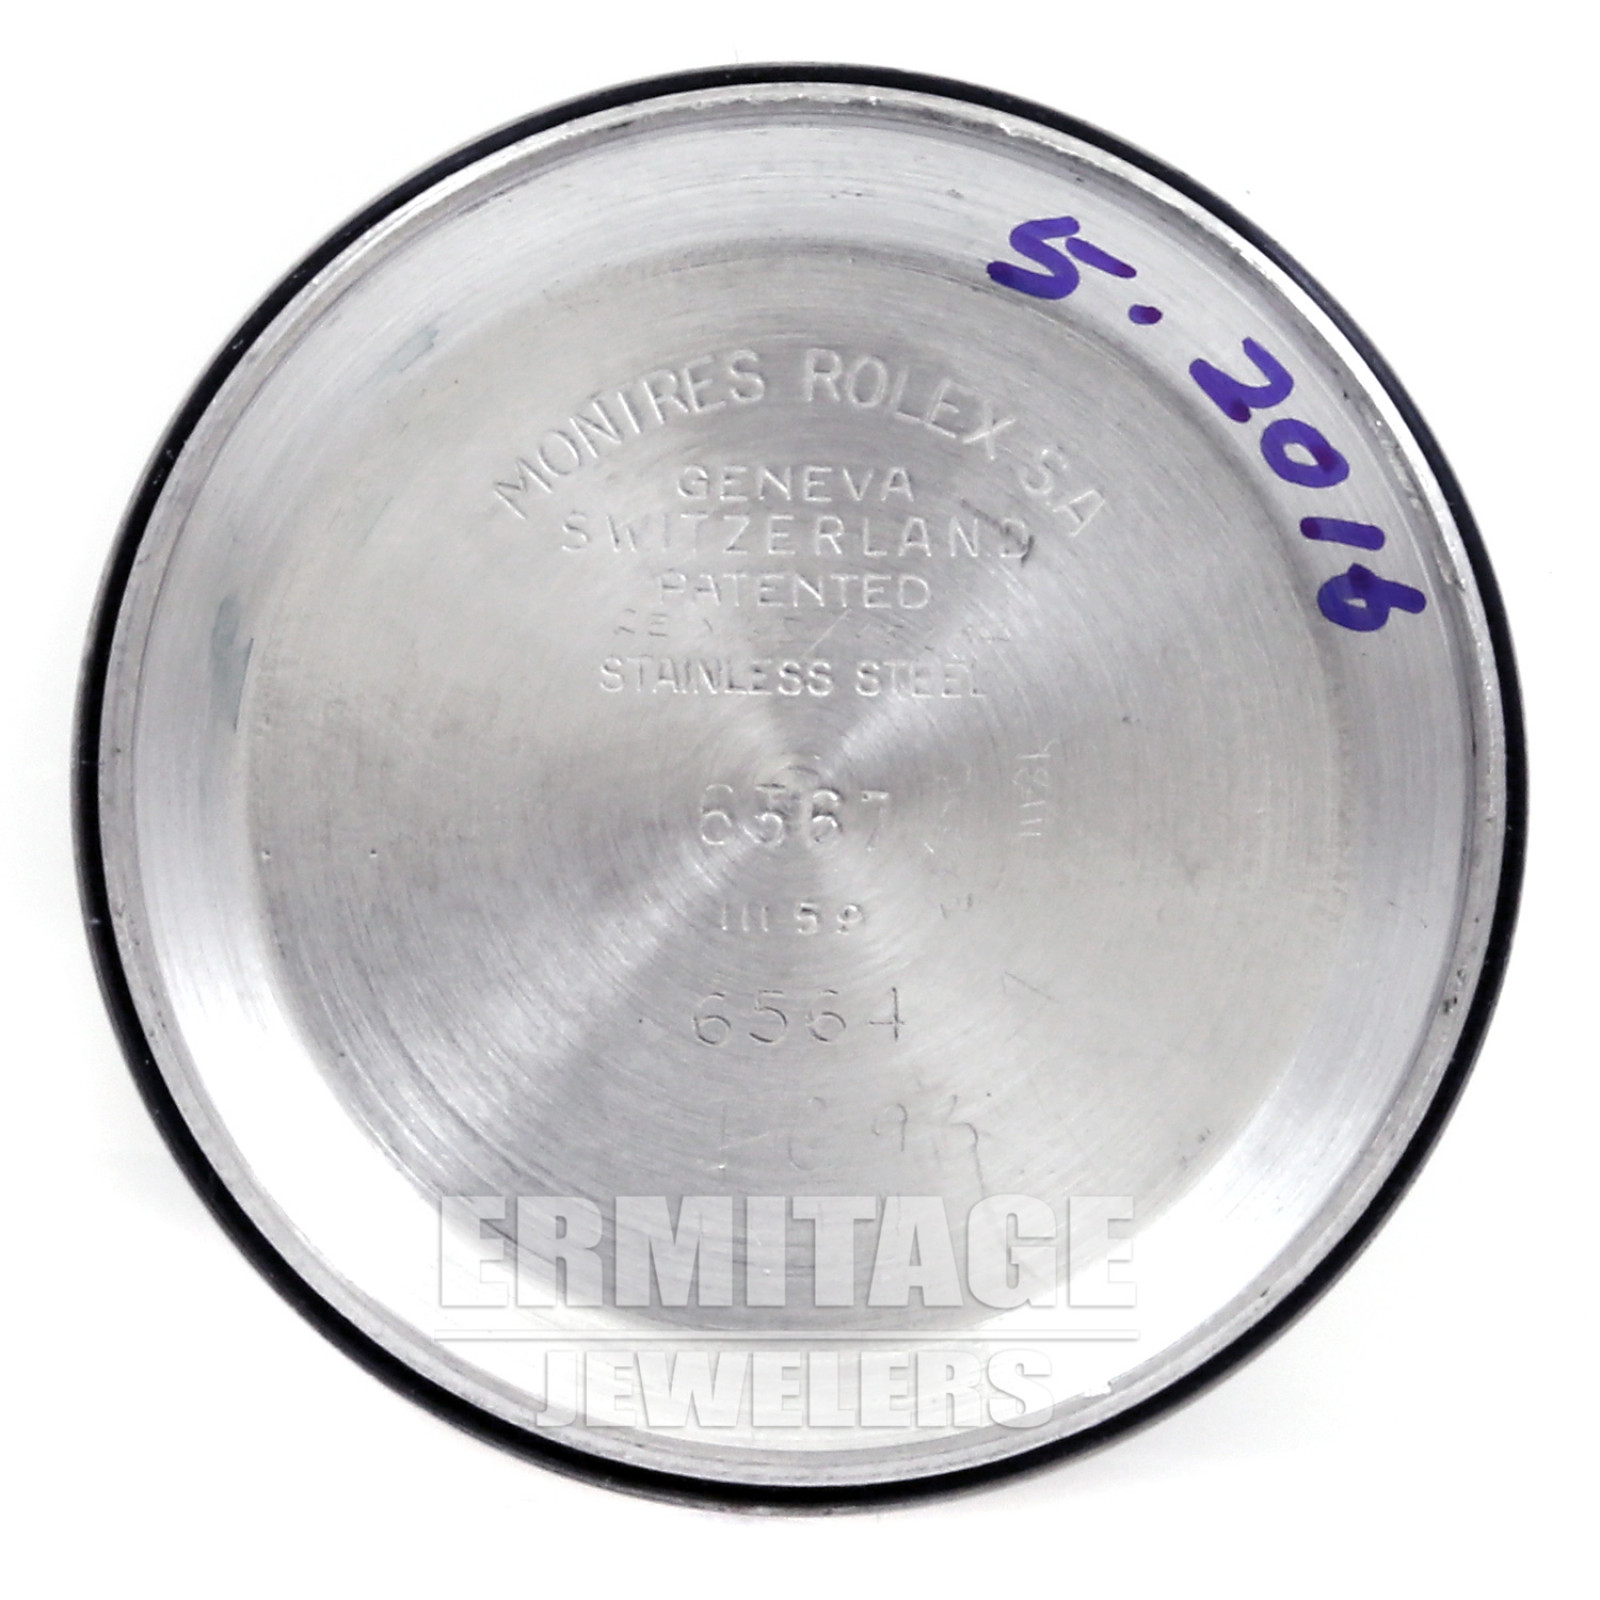 Vintage Rolex 6564 34 mm Steel on Oyster